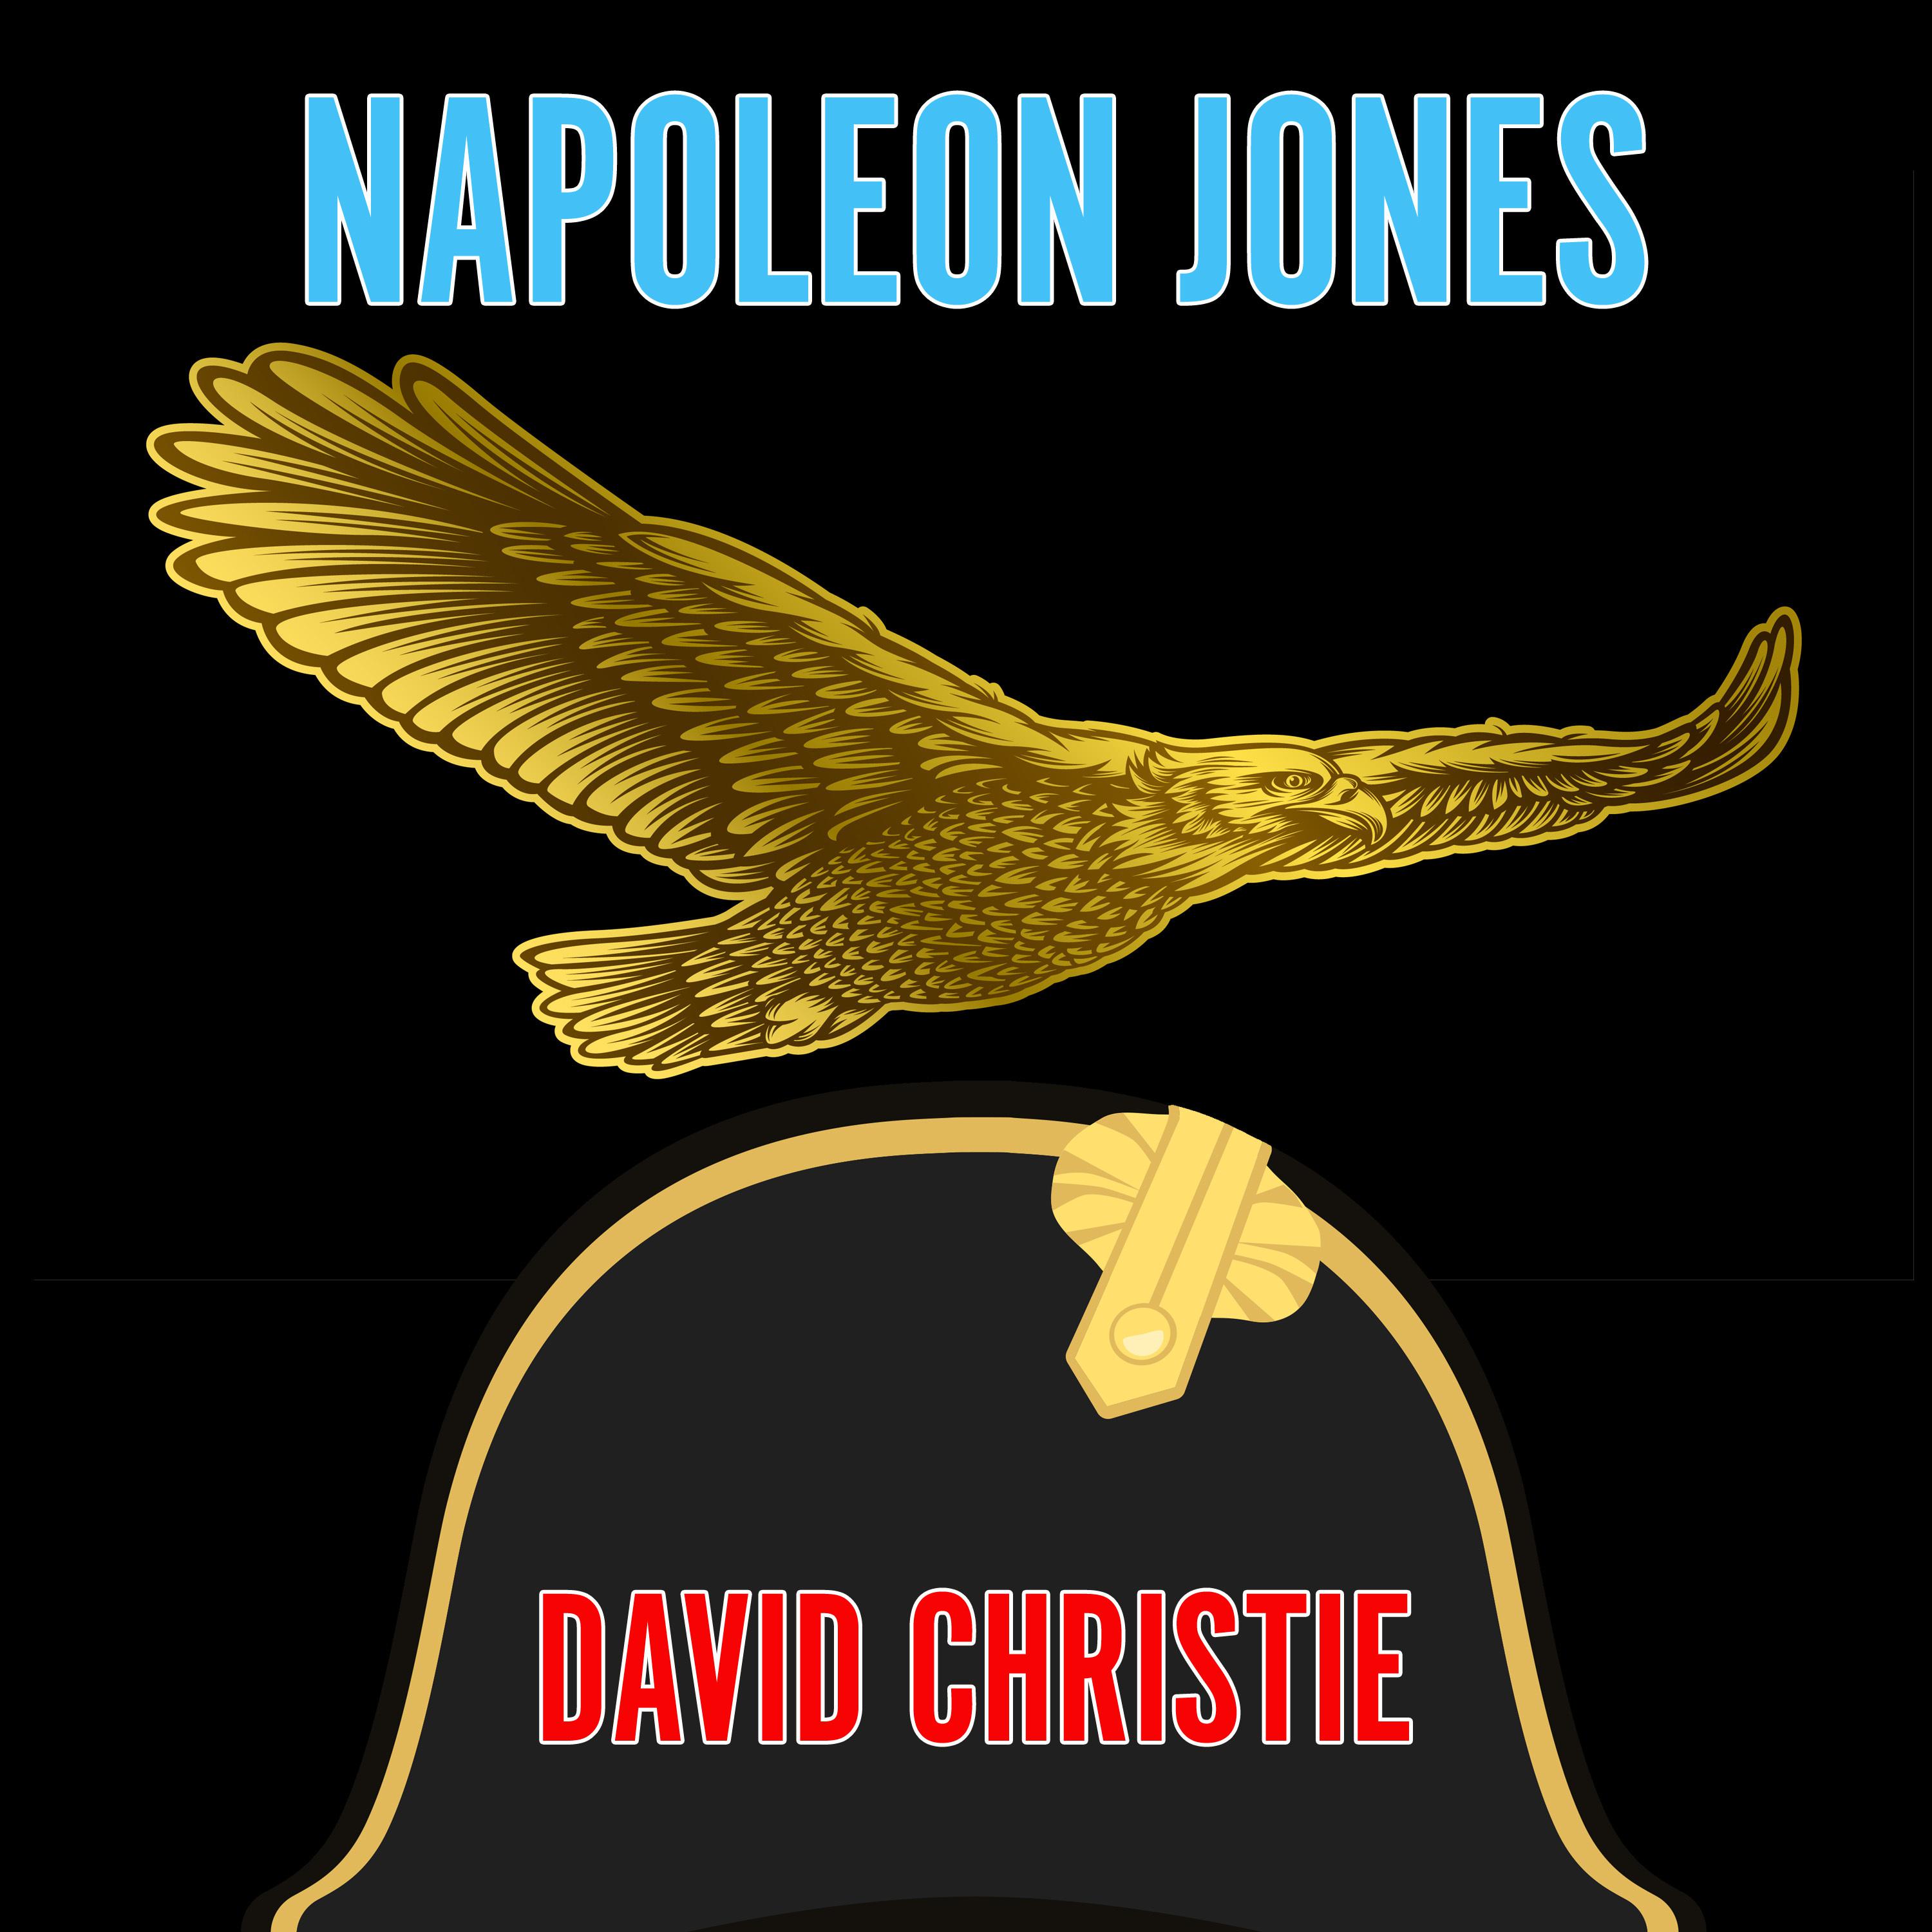 Napoleon Jones